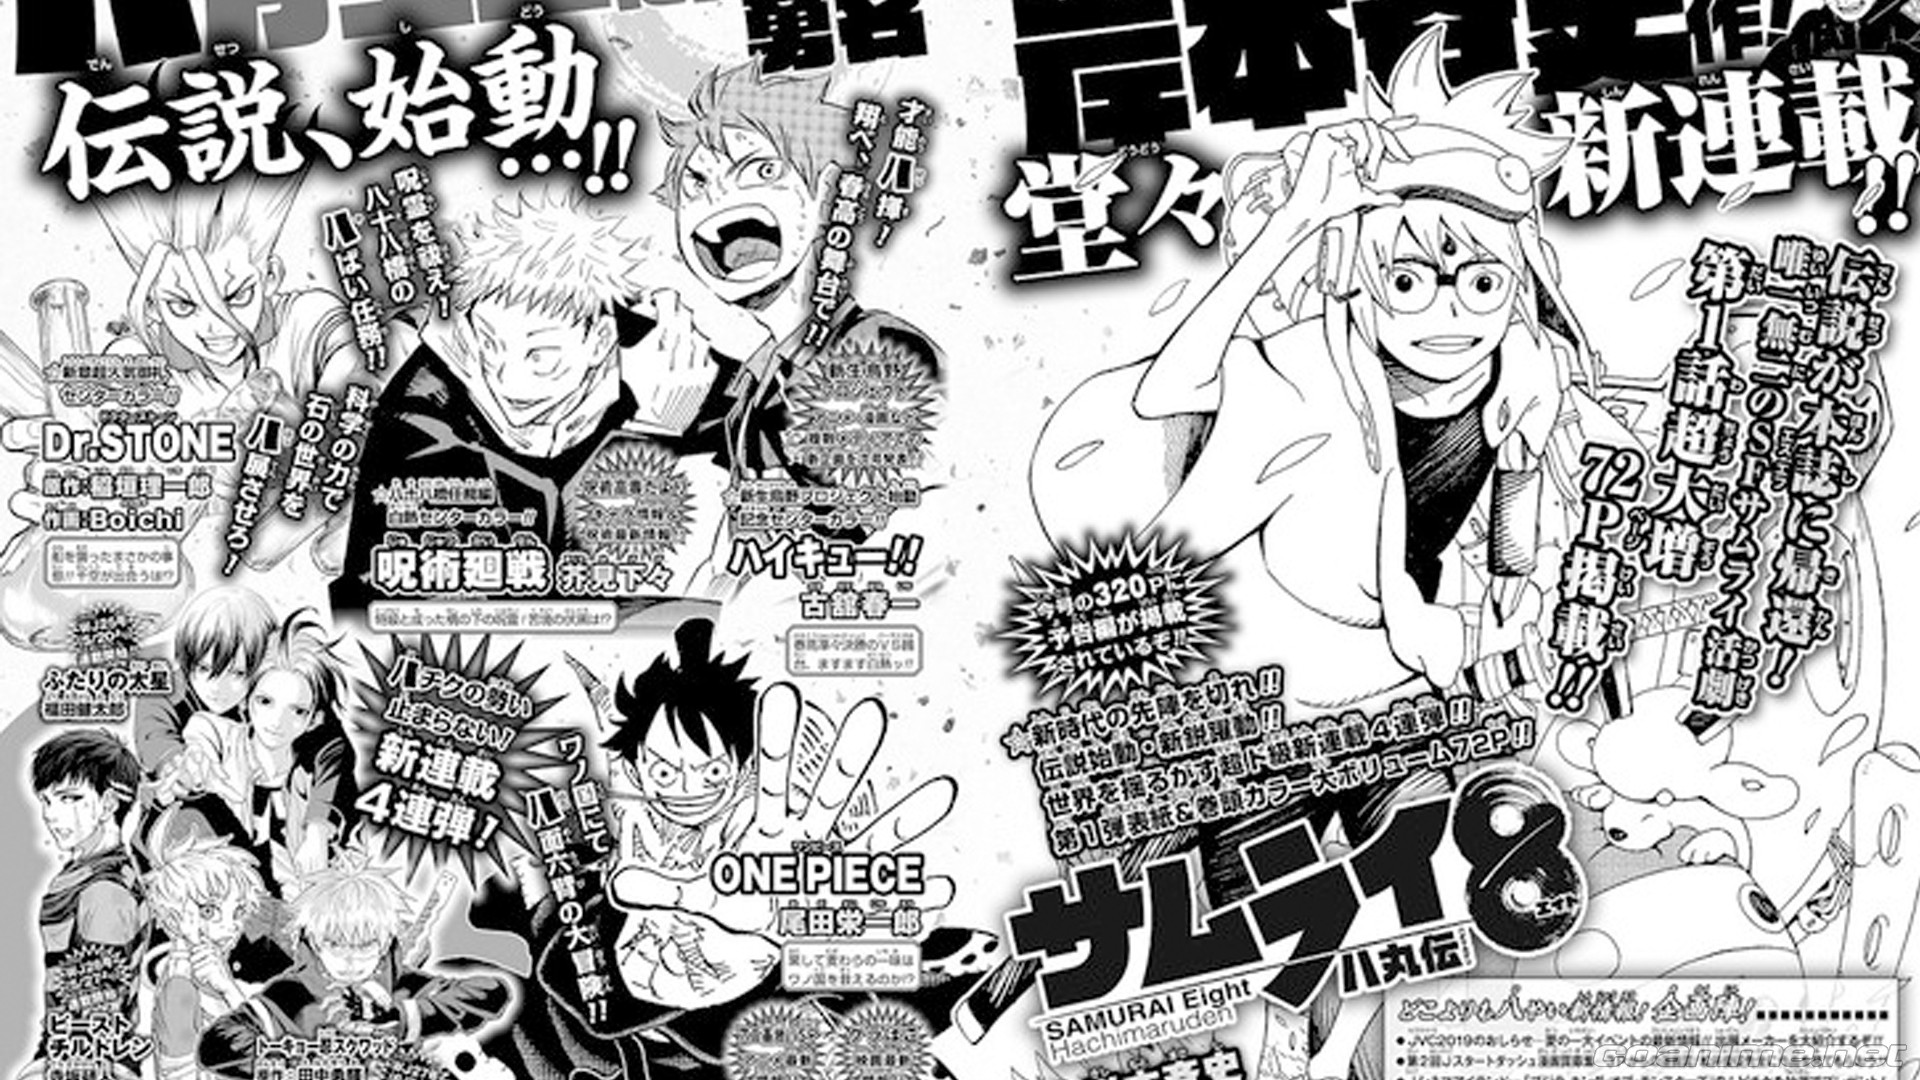 Se lanzarán cuatro nuevos mangas en la revista Weekly Shonen Jump